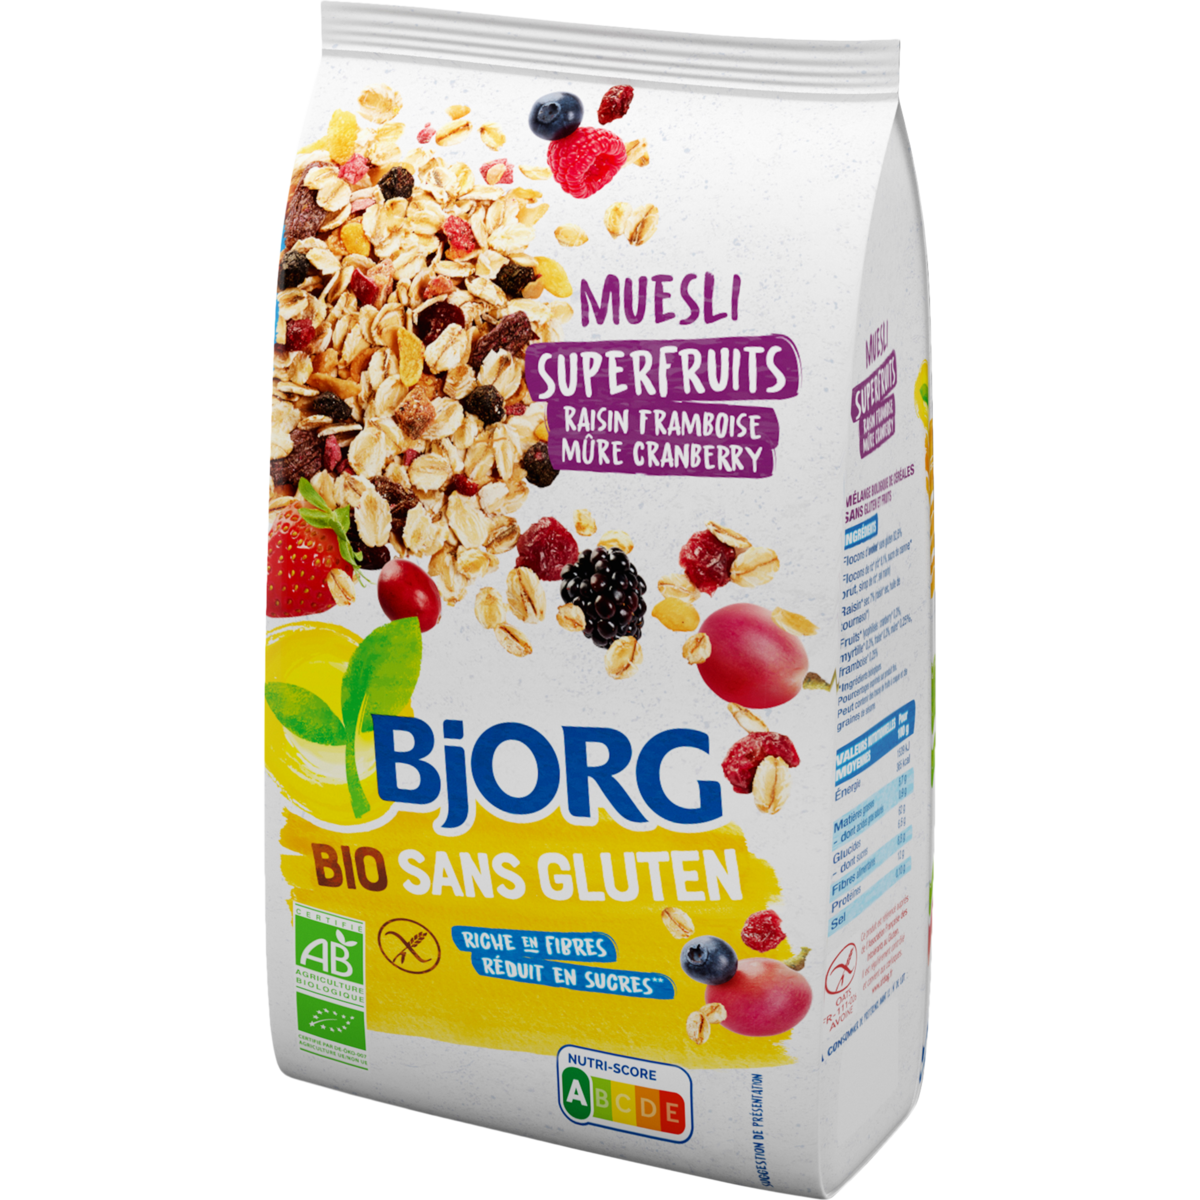 Bjorg - Muesli superfruits BIO - Supermarchés Match